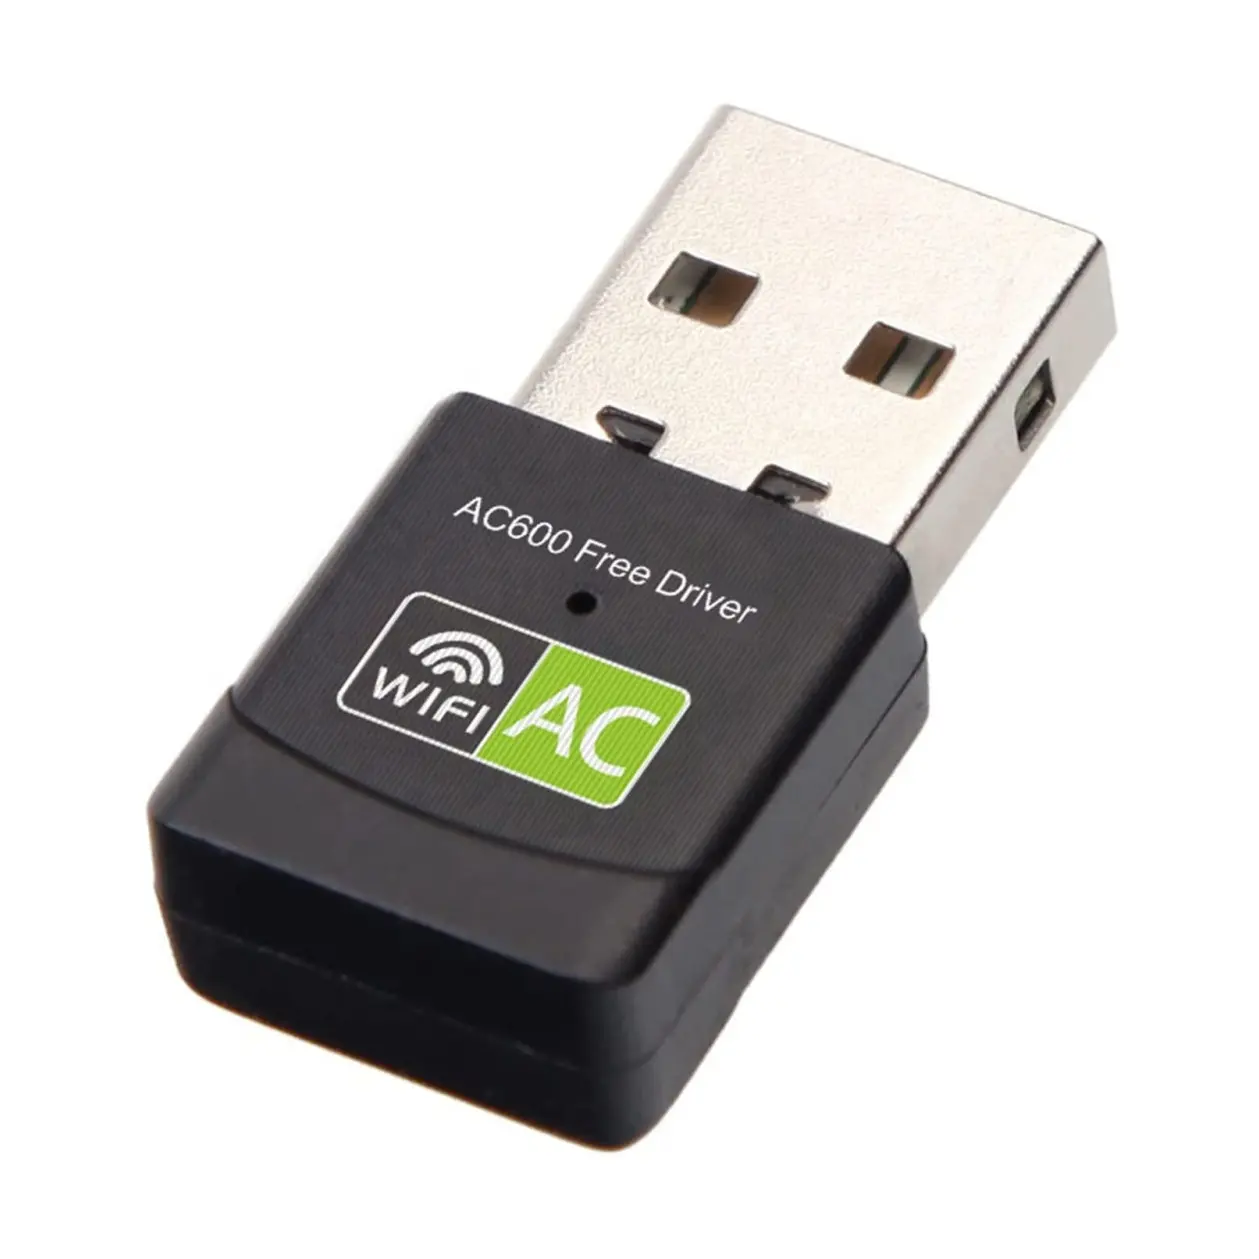 ฟรีไดรเวอร์ USB WiFi อะแดปเตอร์สำหรับเครื่องคอมพิวเตอร์,AC600M USB WiFi ดองเกิล802.11ac อะแดปเตอร์เครือข่ายไร้สายที่มี Dual Band 2.4กิกะเฮิร์ตซ์/5กิกะเฮิร์ตซ์